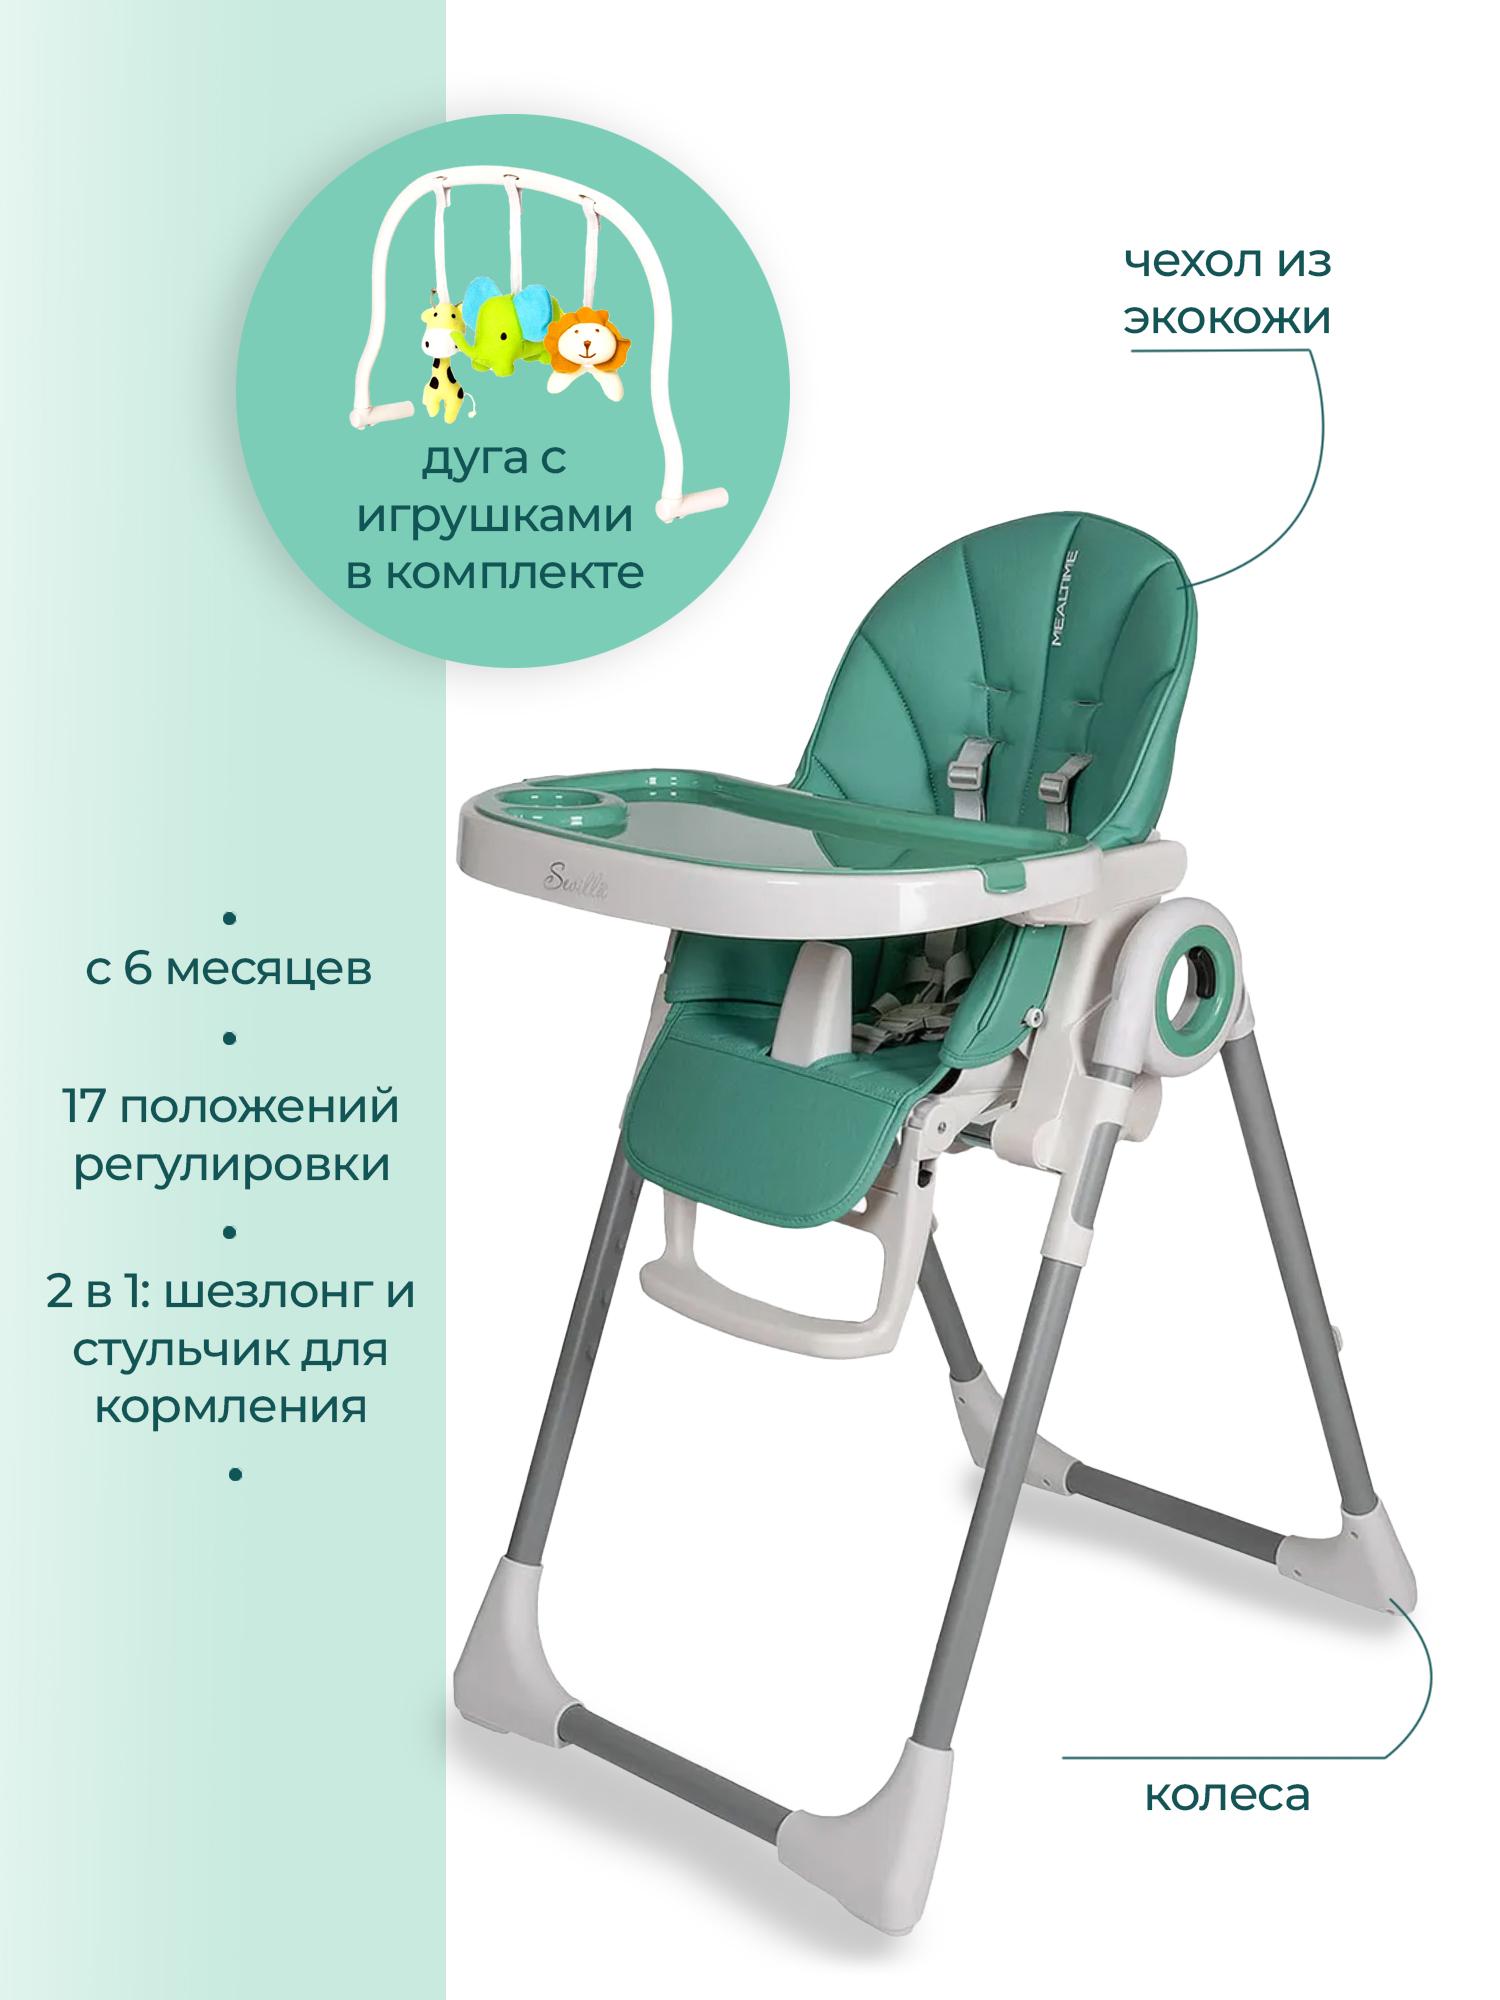 Детский стульчик для кормления ребенка Sevillababy MEALTIME складной трансформер шезлонг 3 в 1 emerald